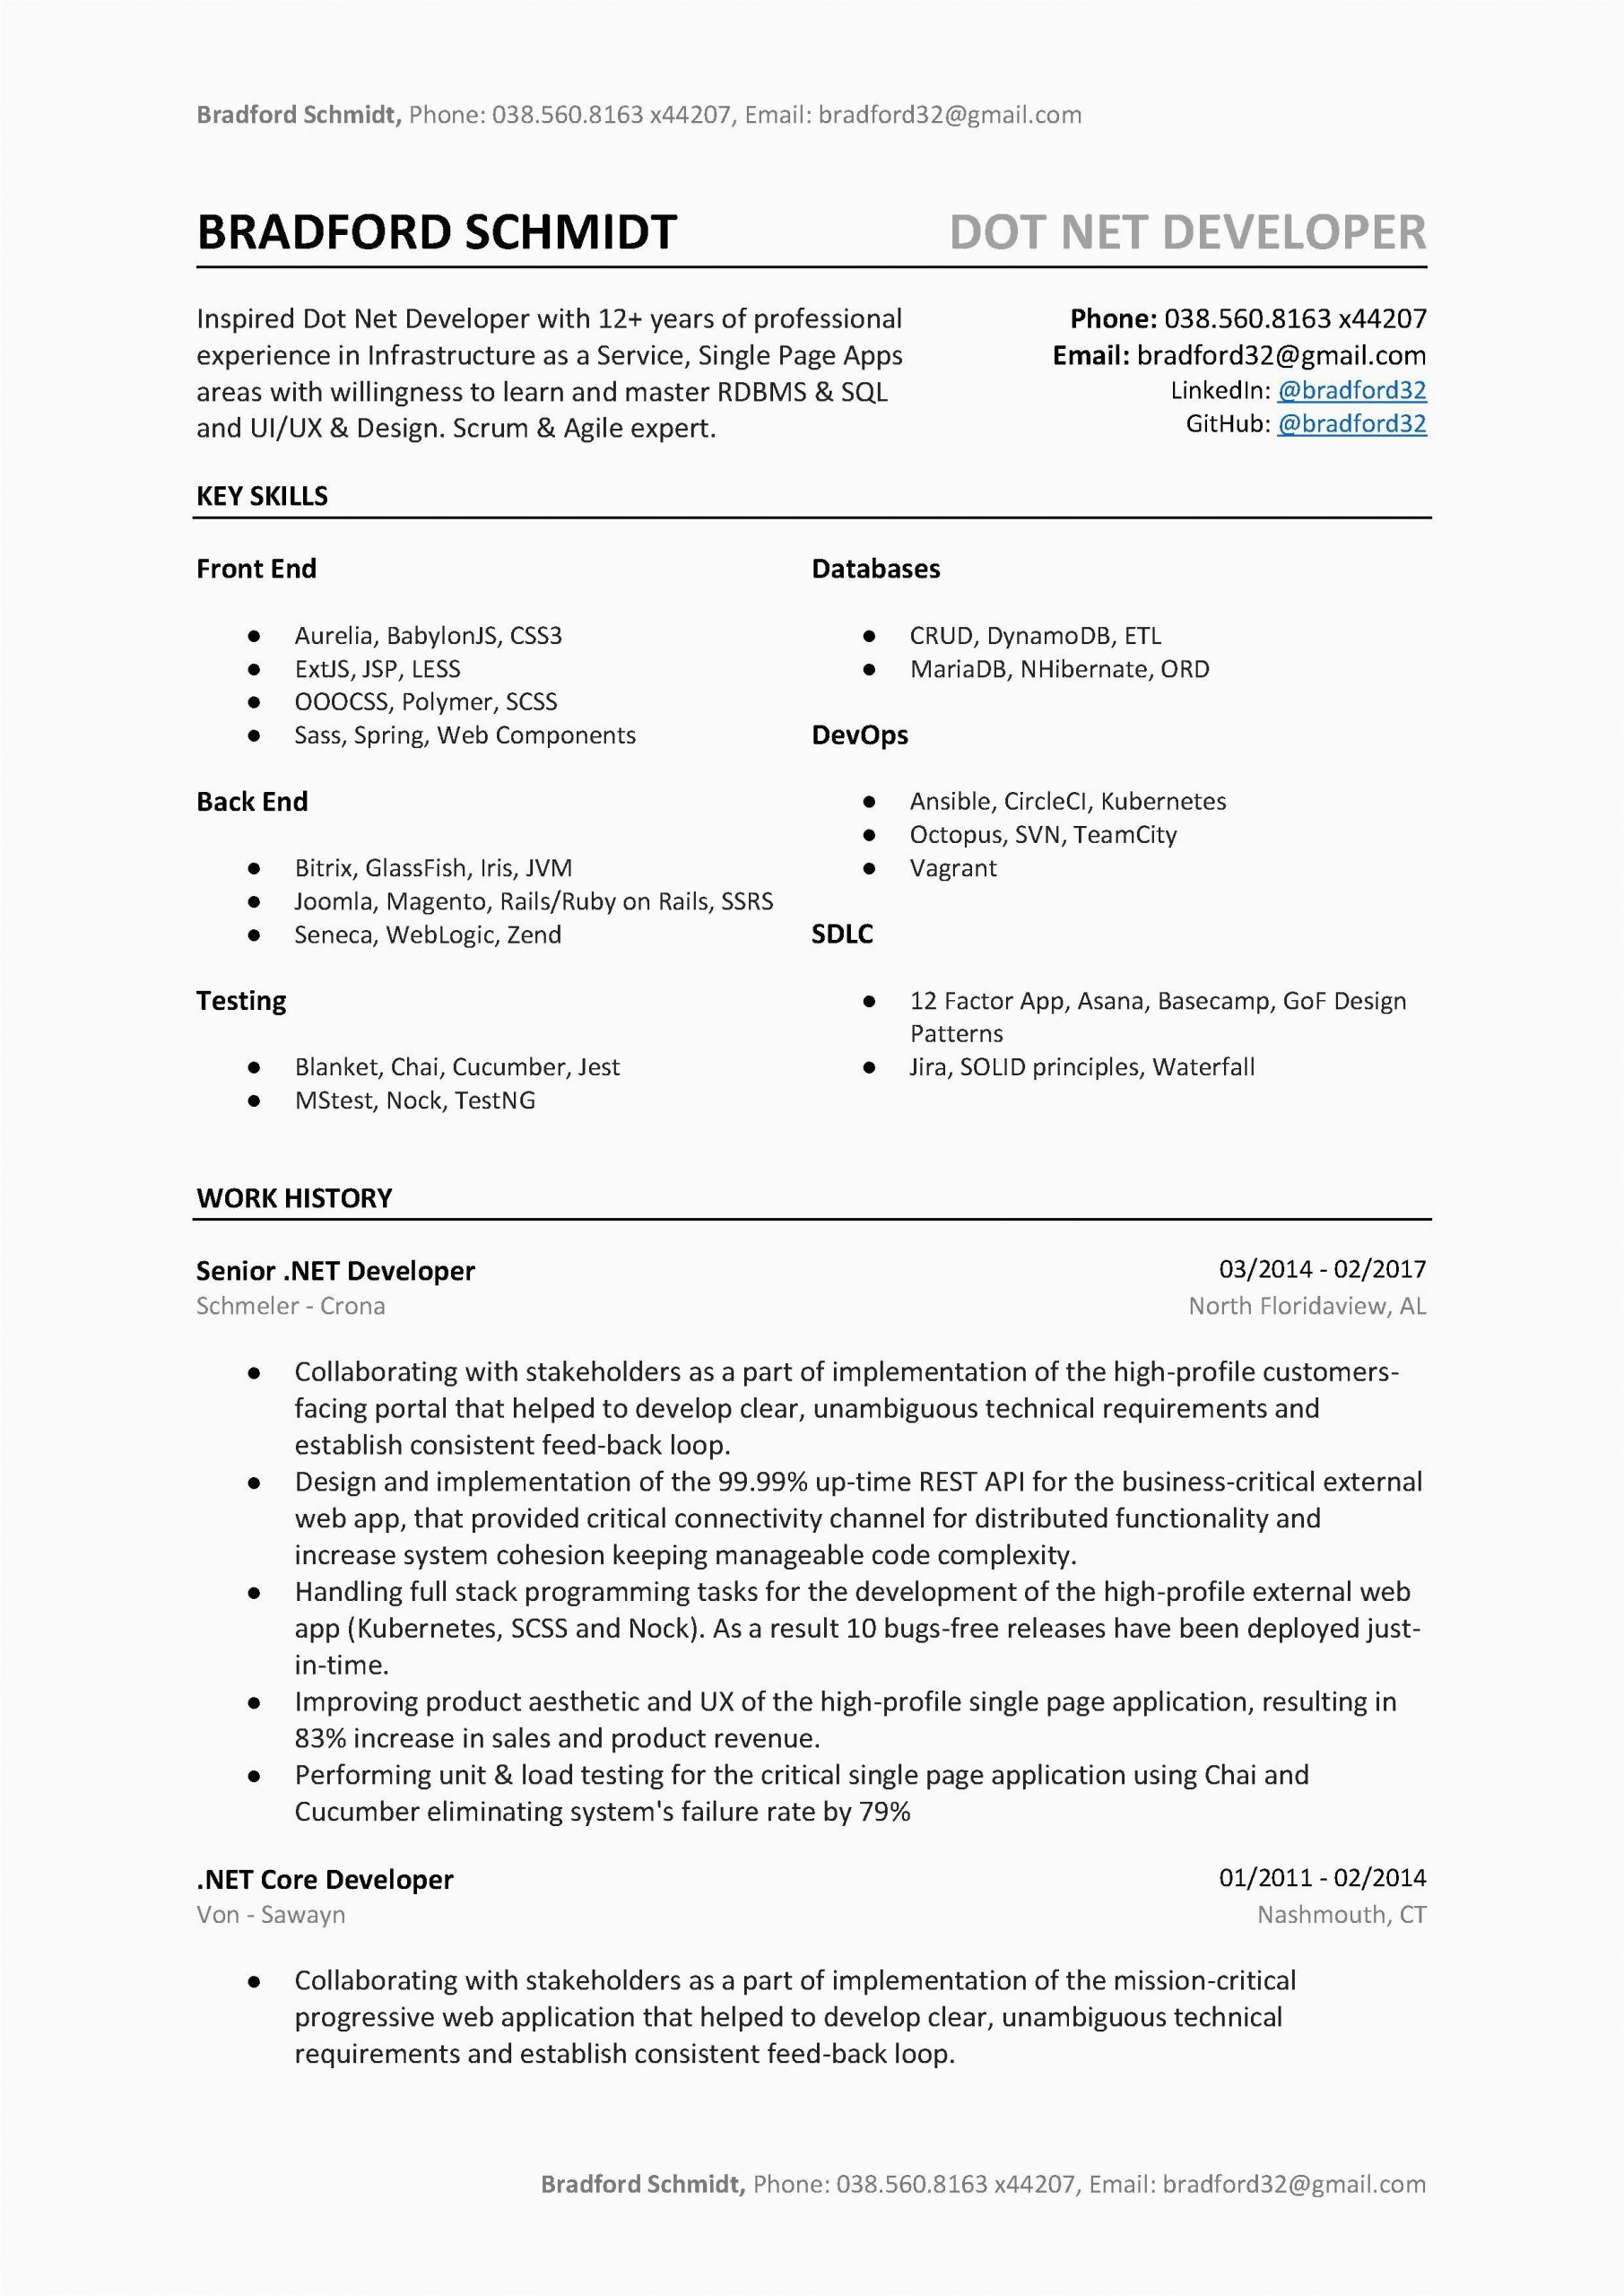 Sample Resume for Experienced Net Developer Dot Net Developer Resume Sample & Template to Download